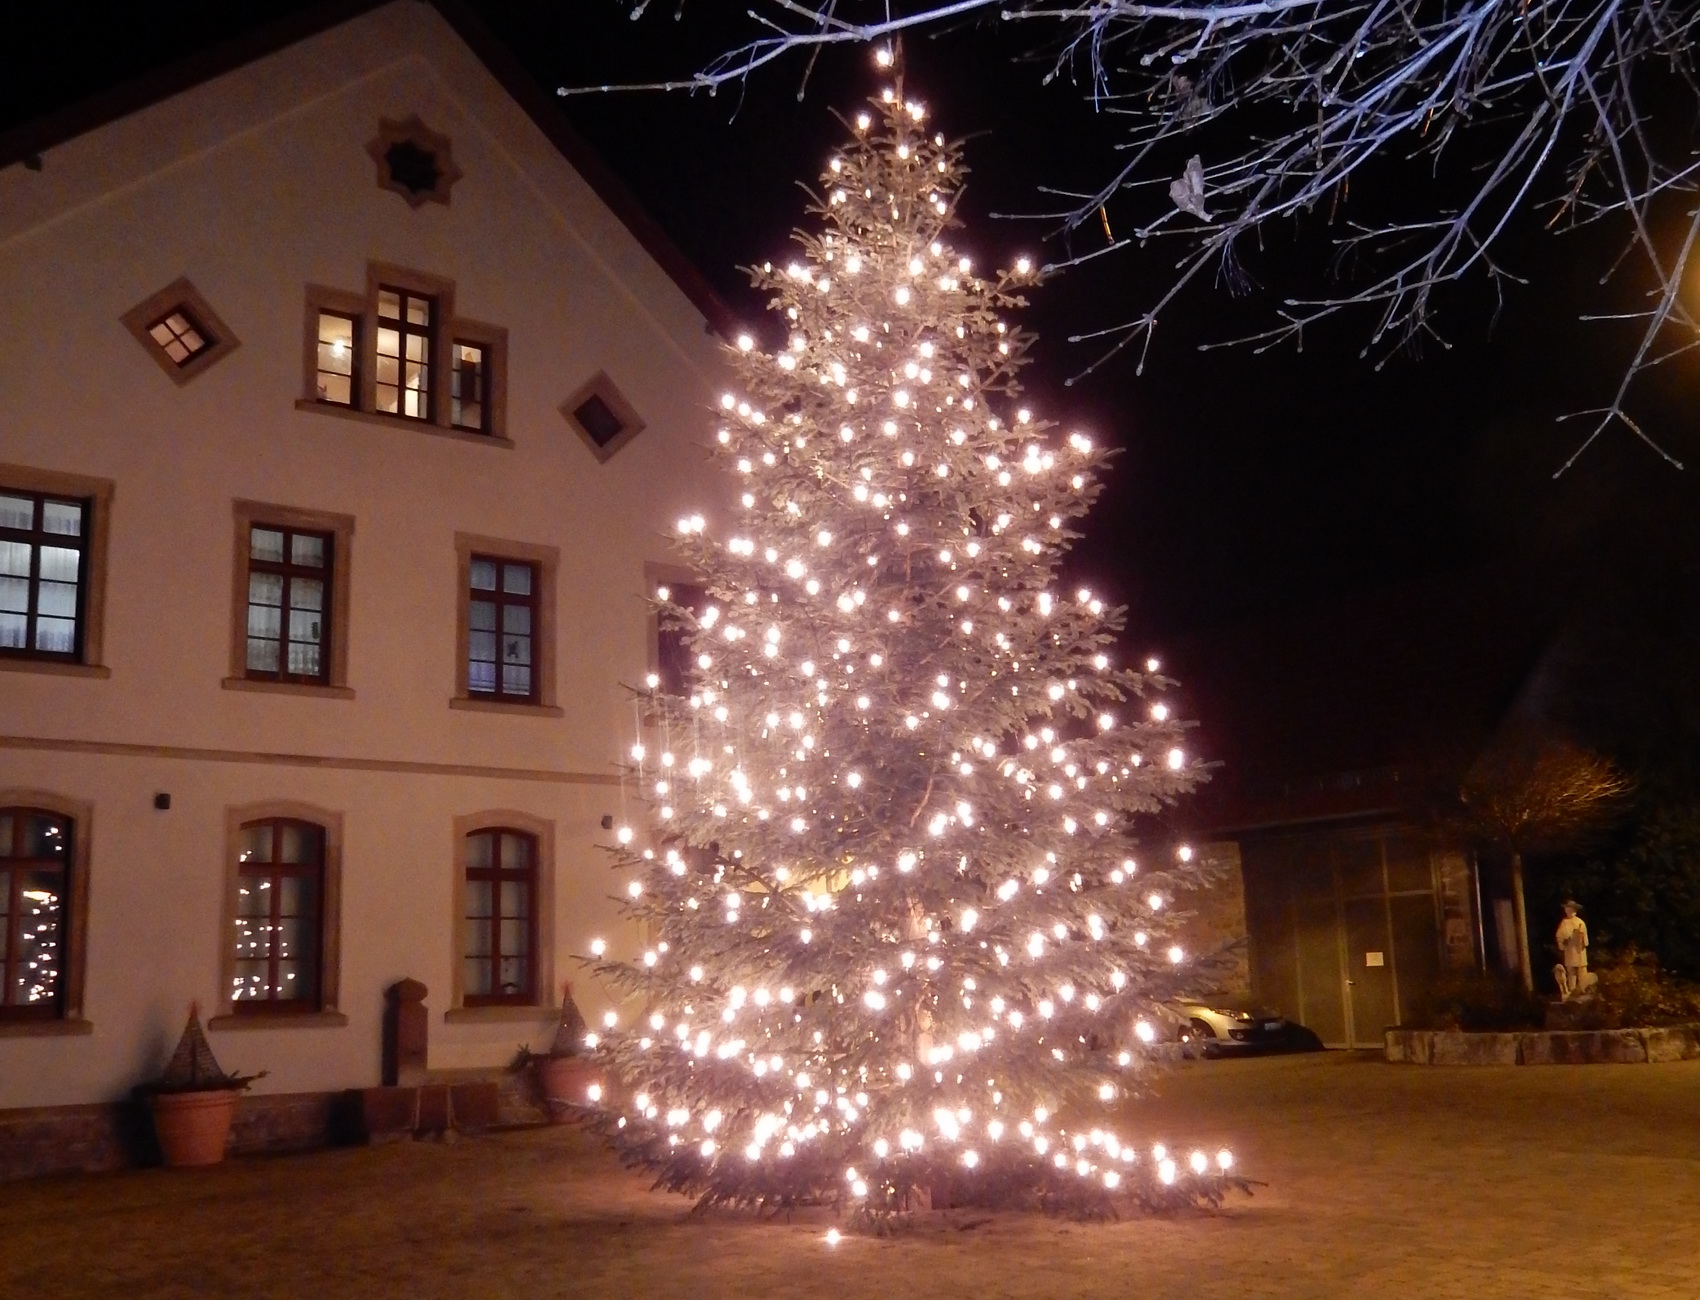 Frohe Weihnachten wünscht der TV Helmsheim